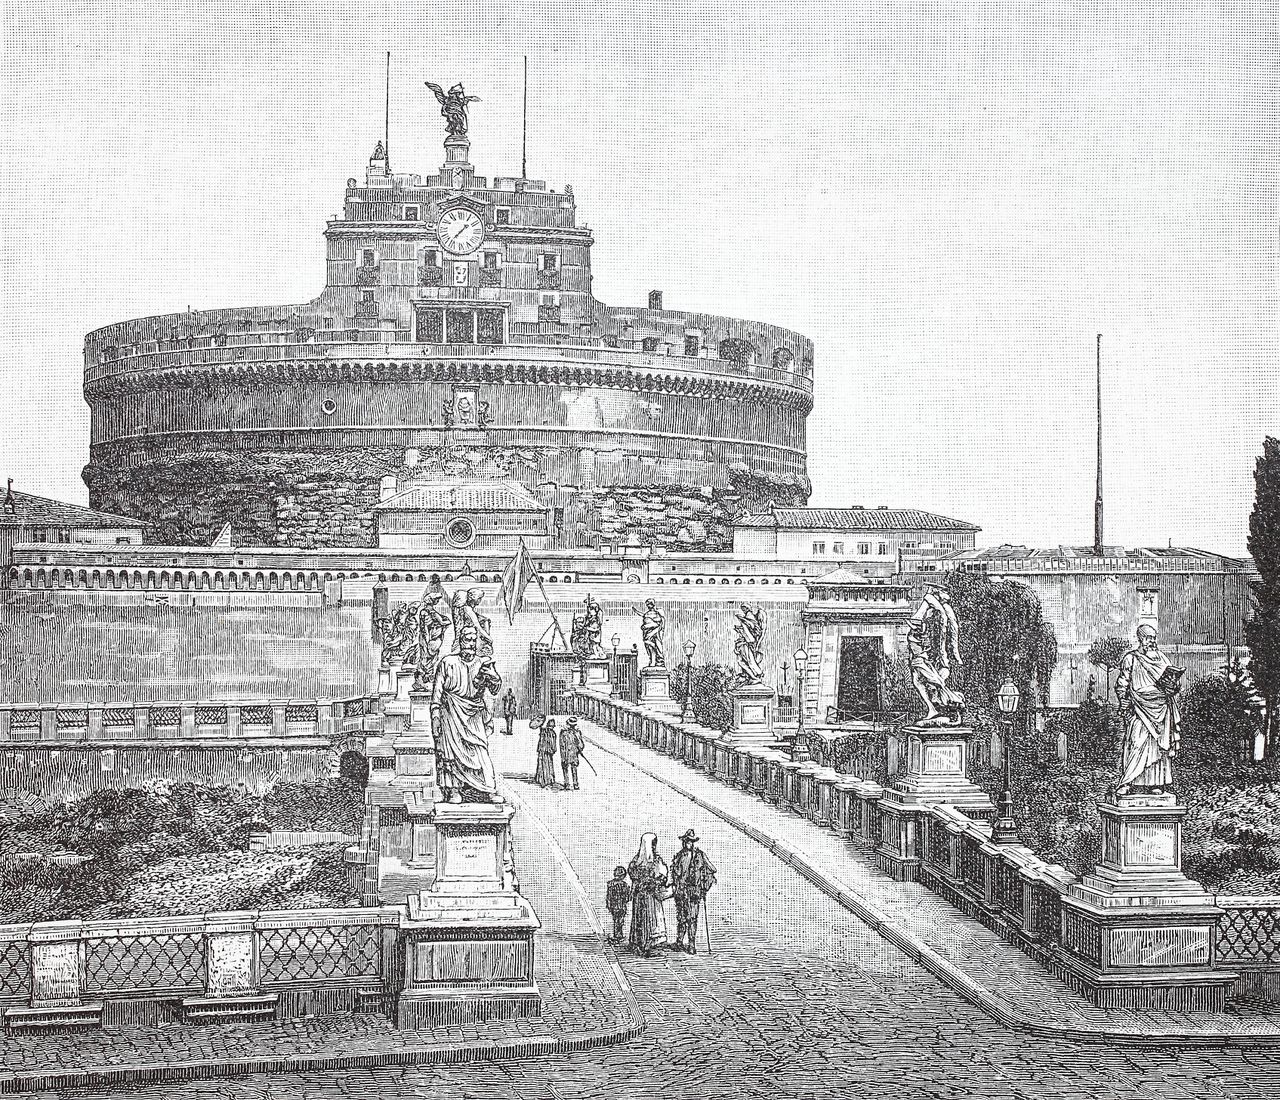 Het mausoleum van keizer Hadrianus in Rome, ook wel het Castel Sant’Angelo, op een ets uit 1885.